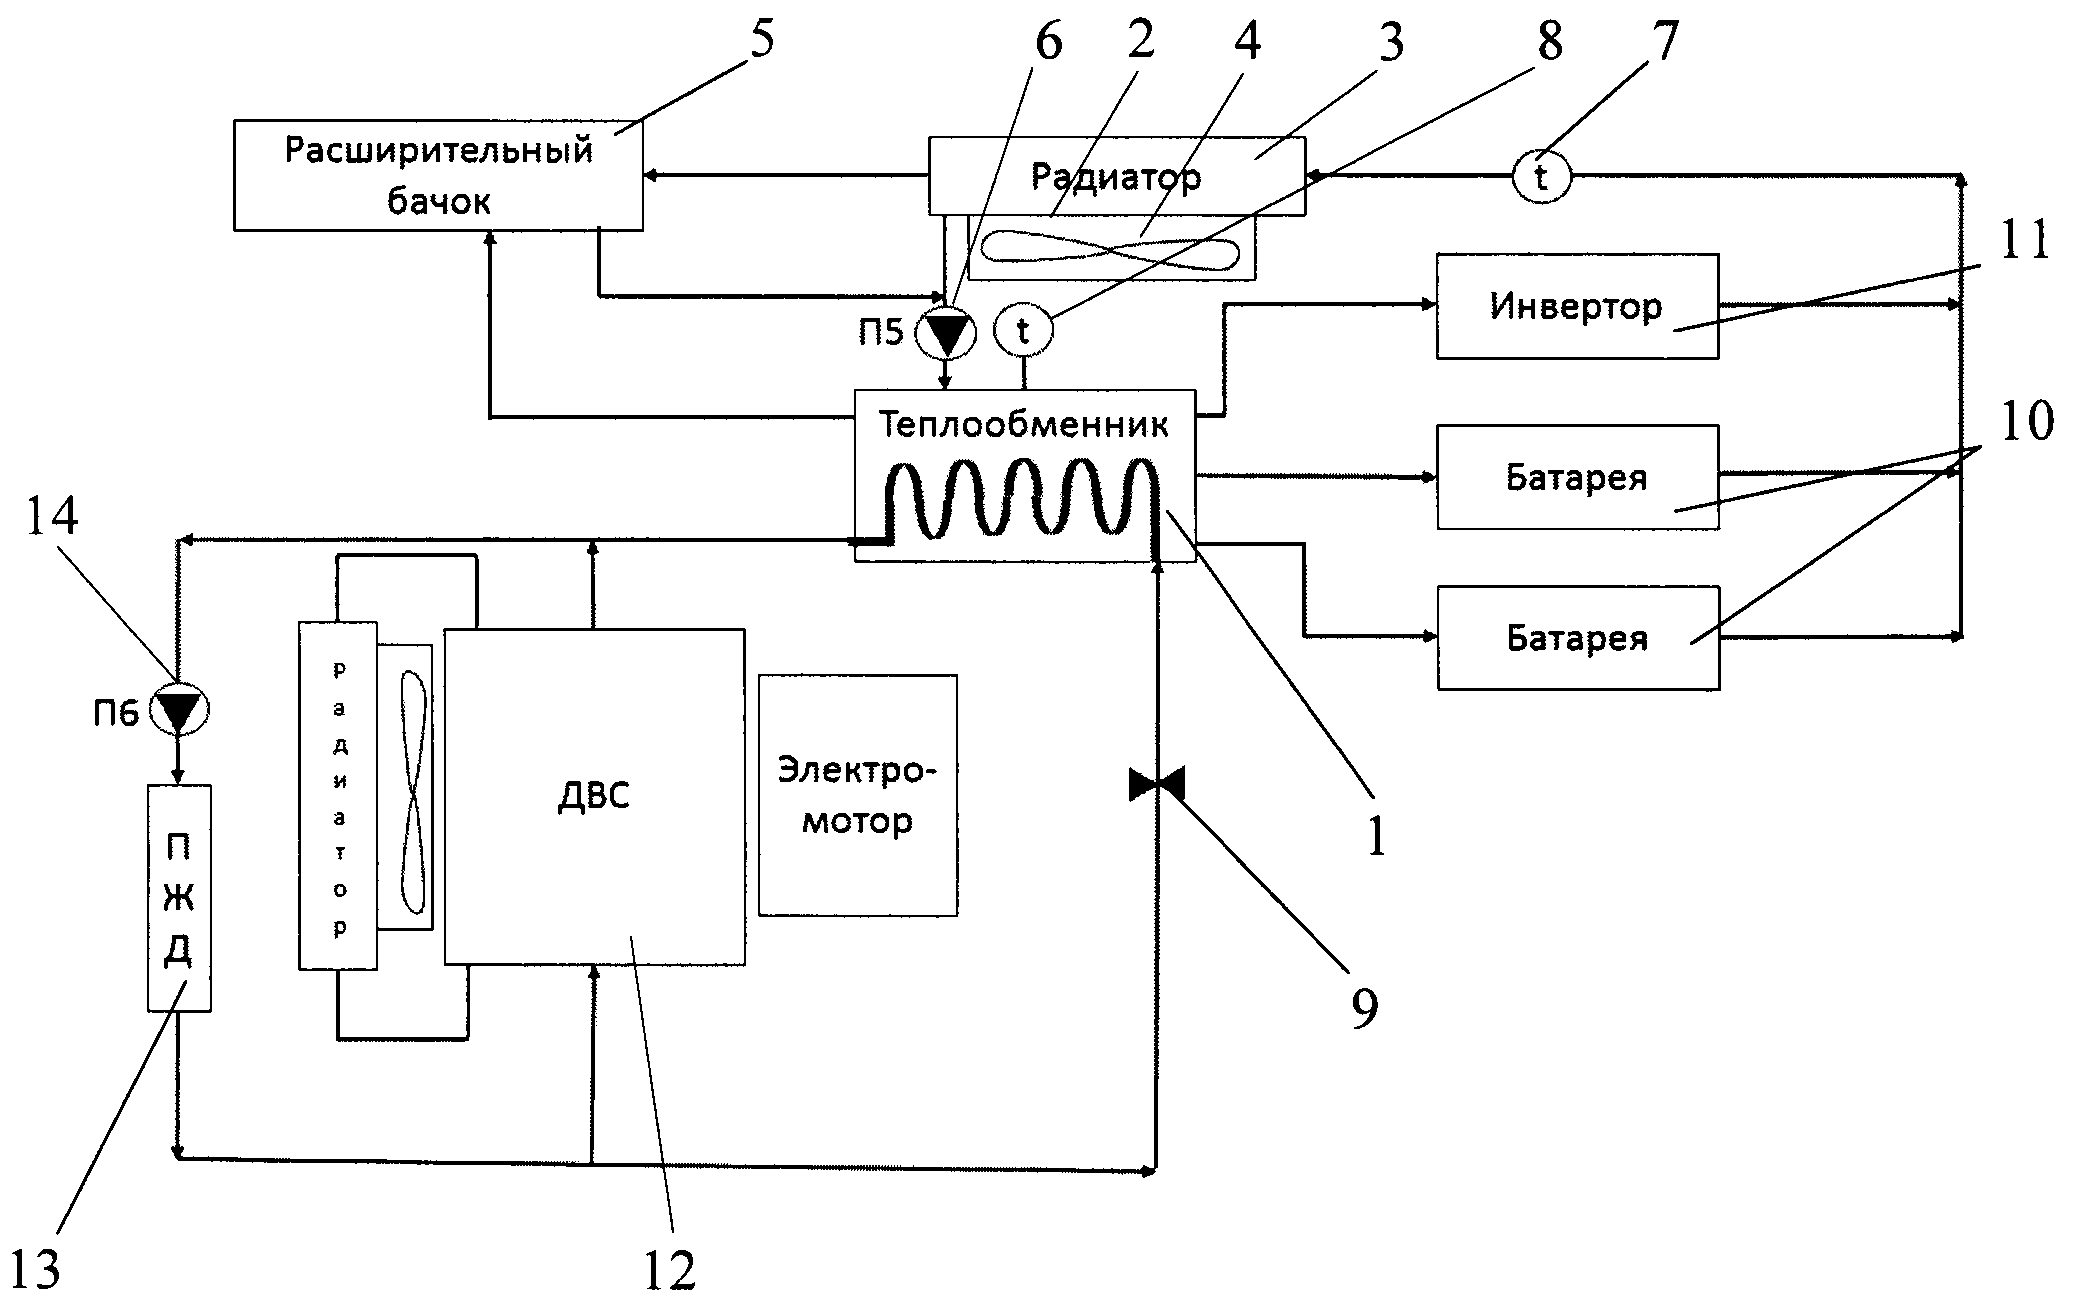 Система термостатирования батарейного модуля и инвертора гибридного автомобиля